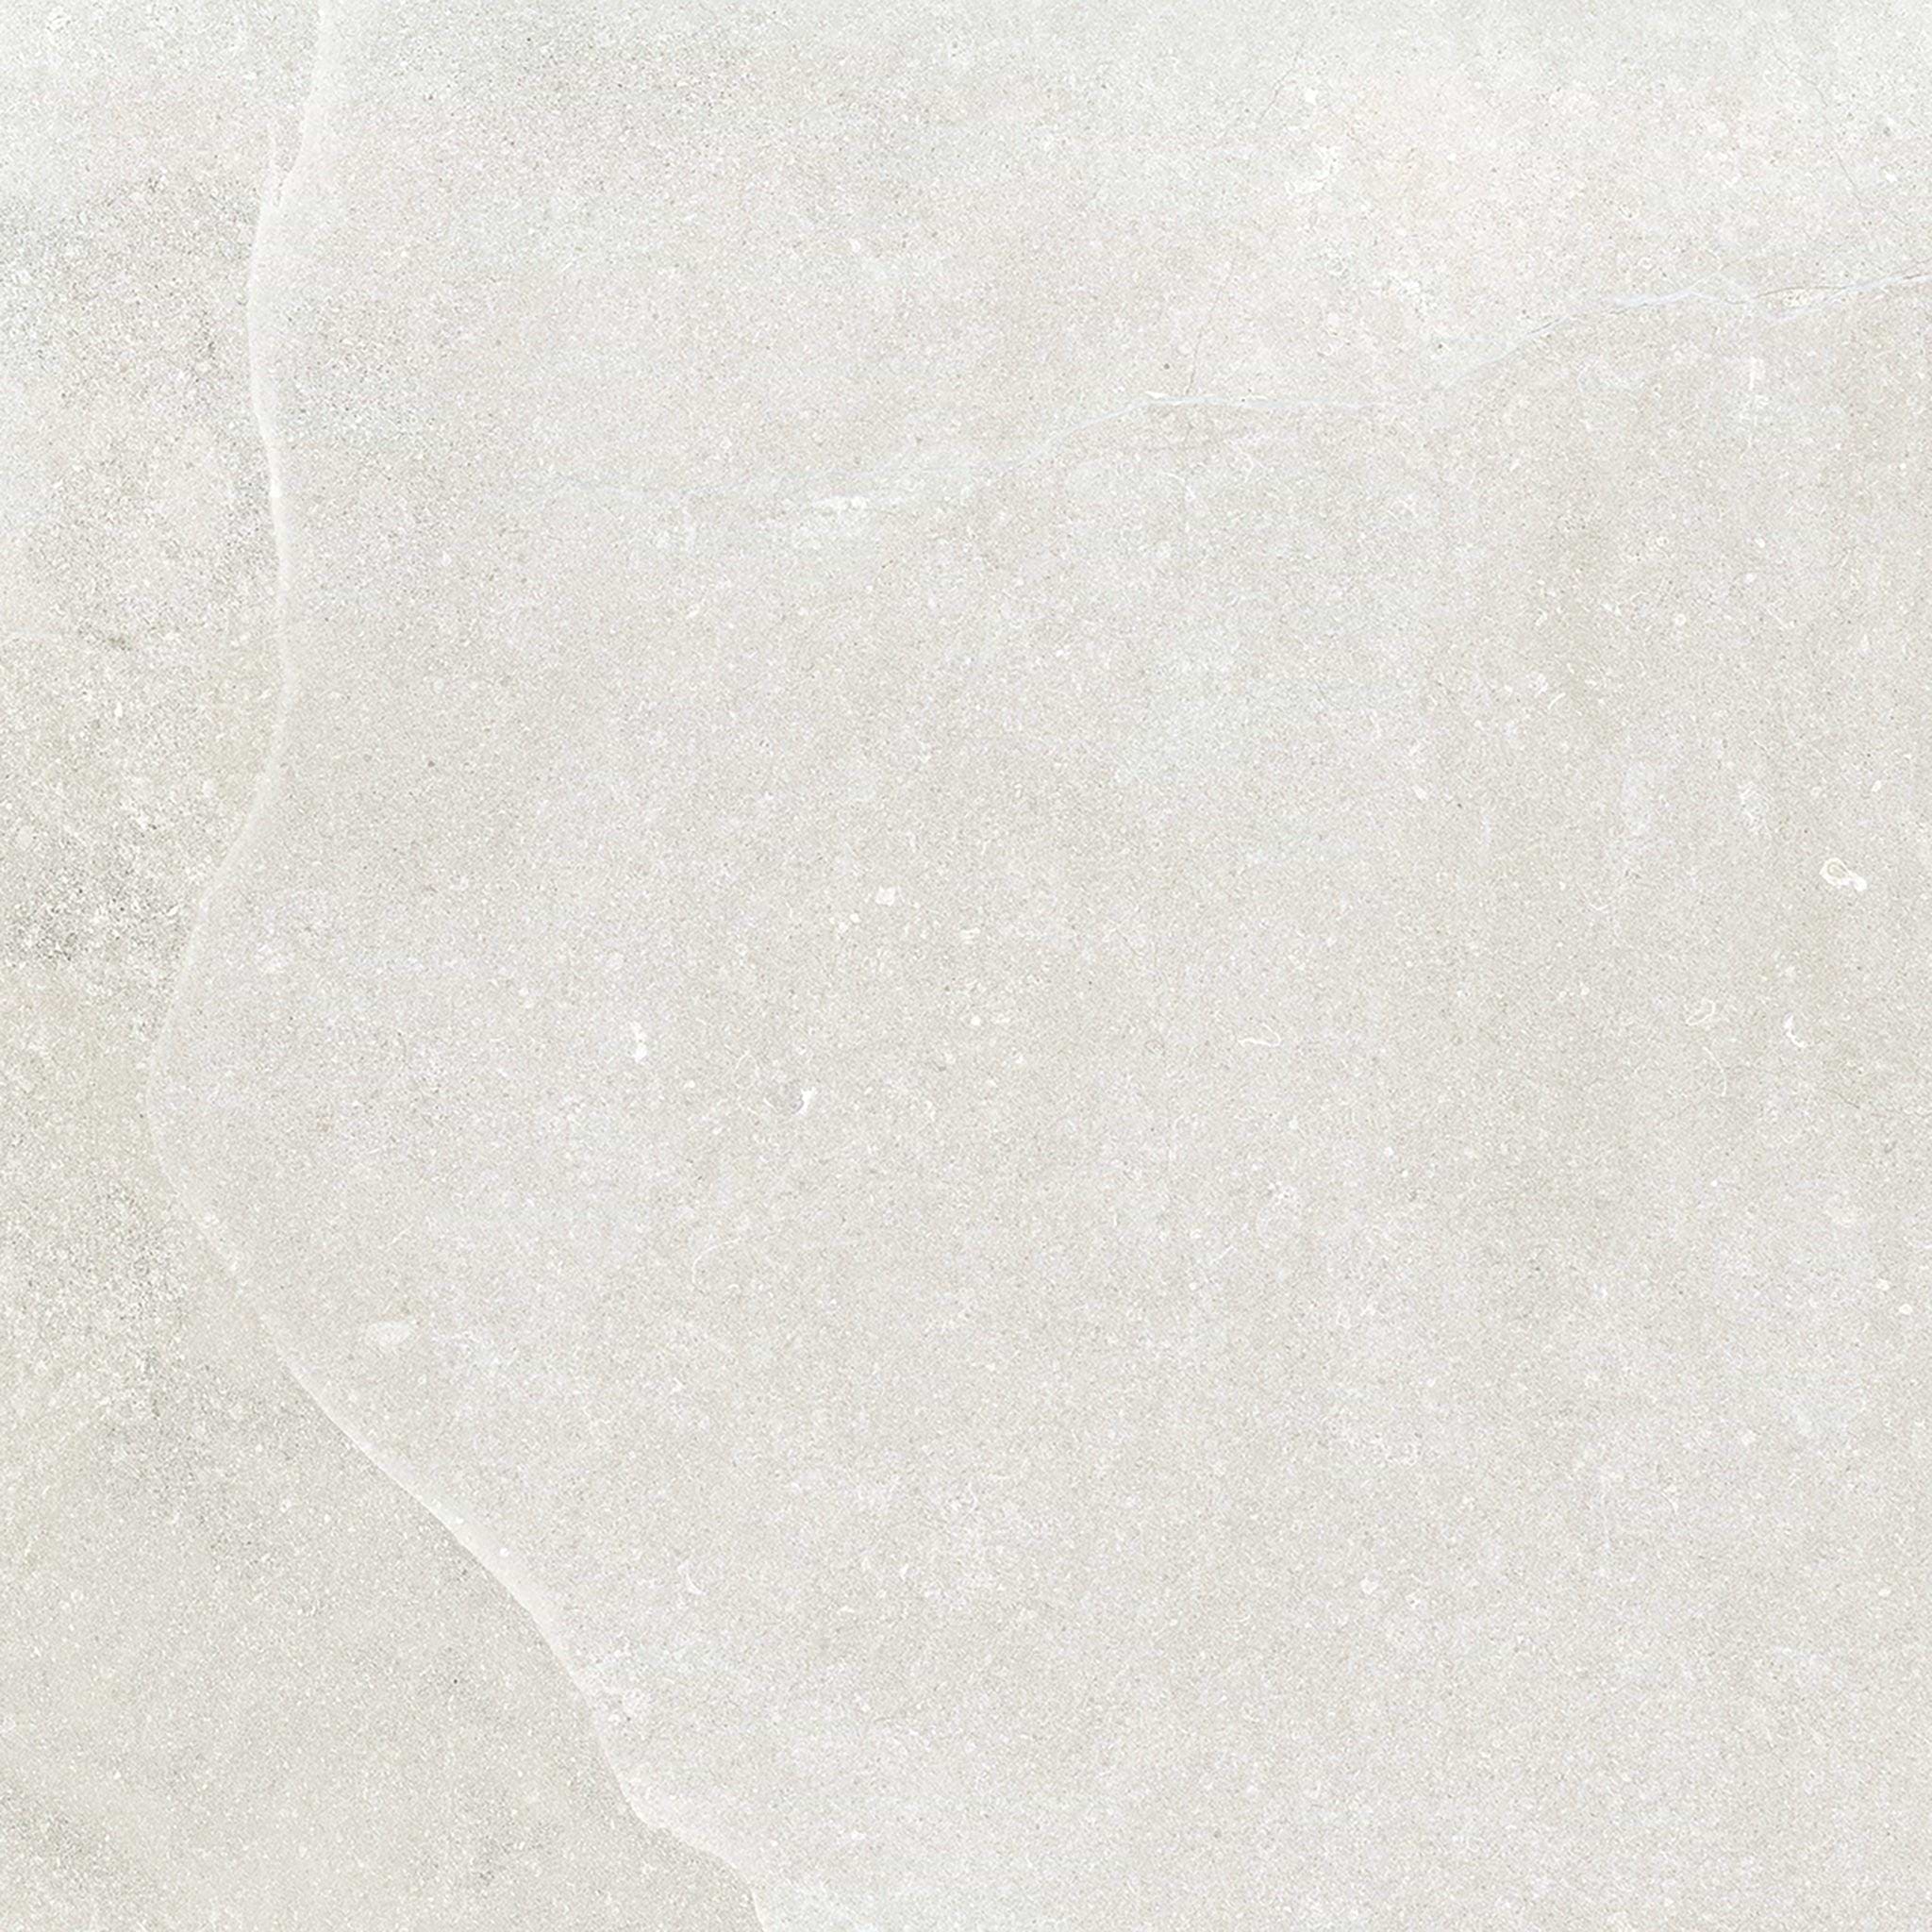 Dorset Porcelain White 59.7 x 59.7cm - Hyperion Tiles